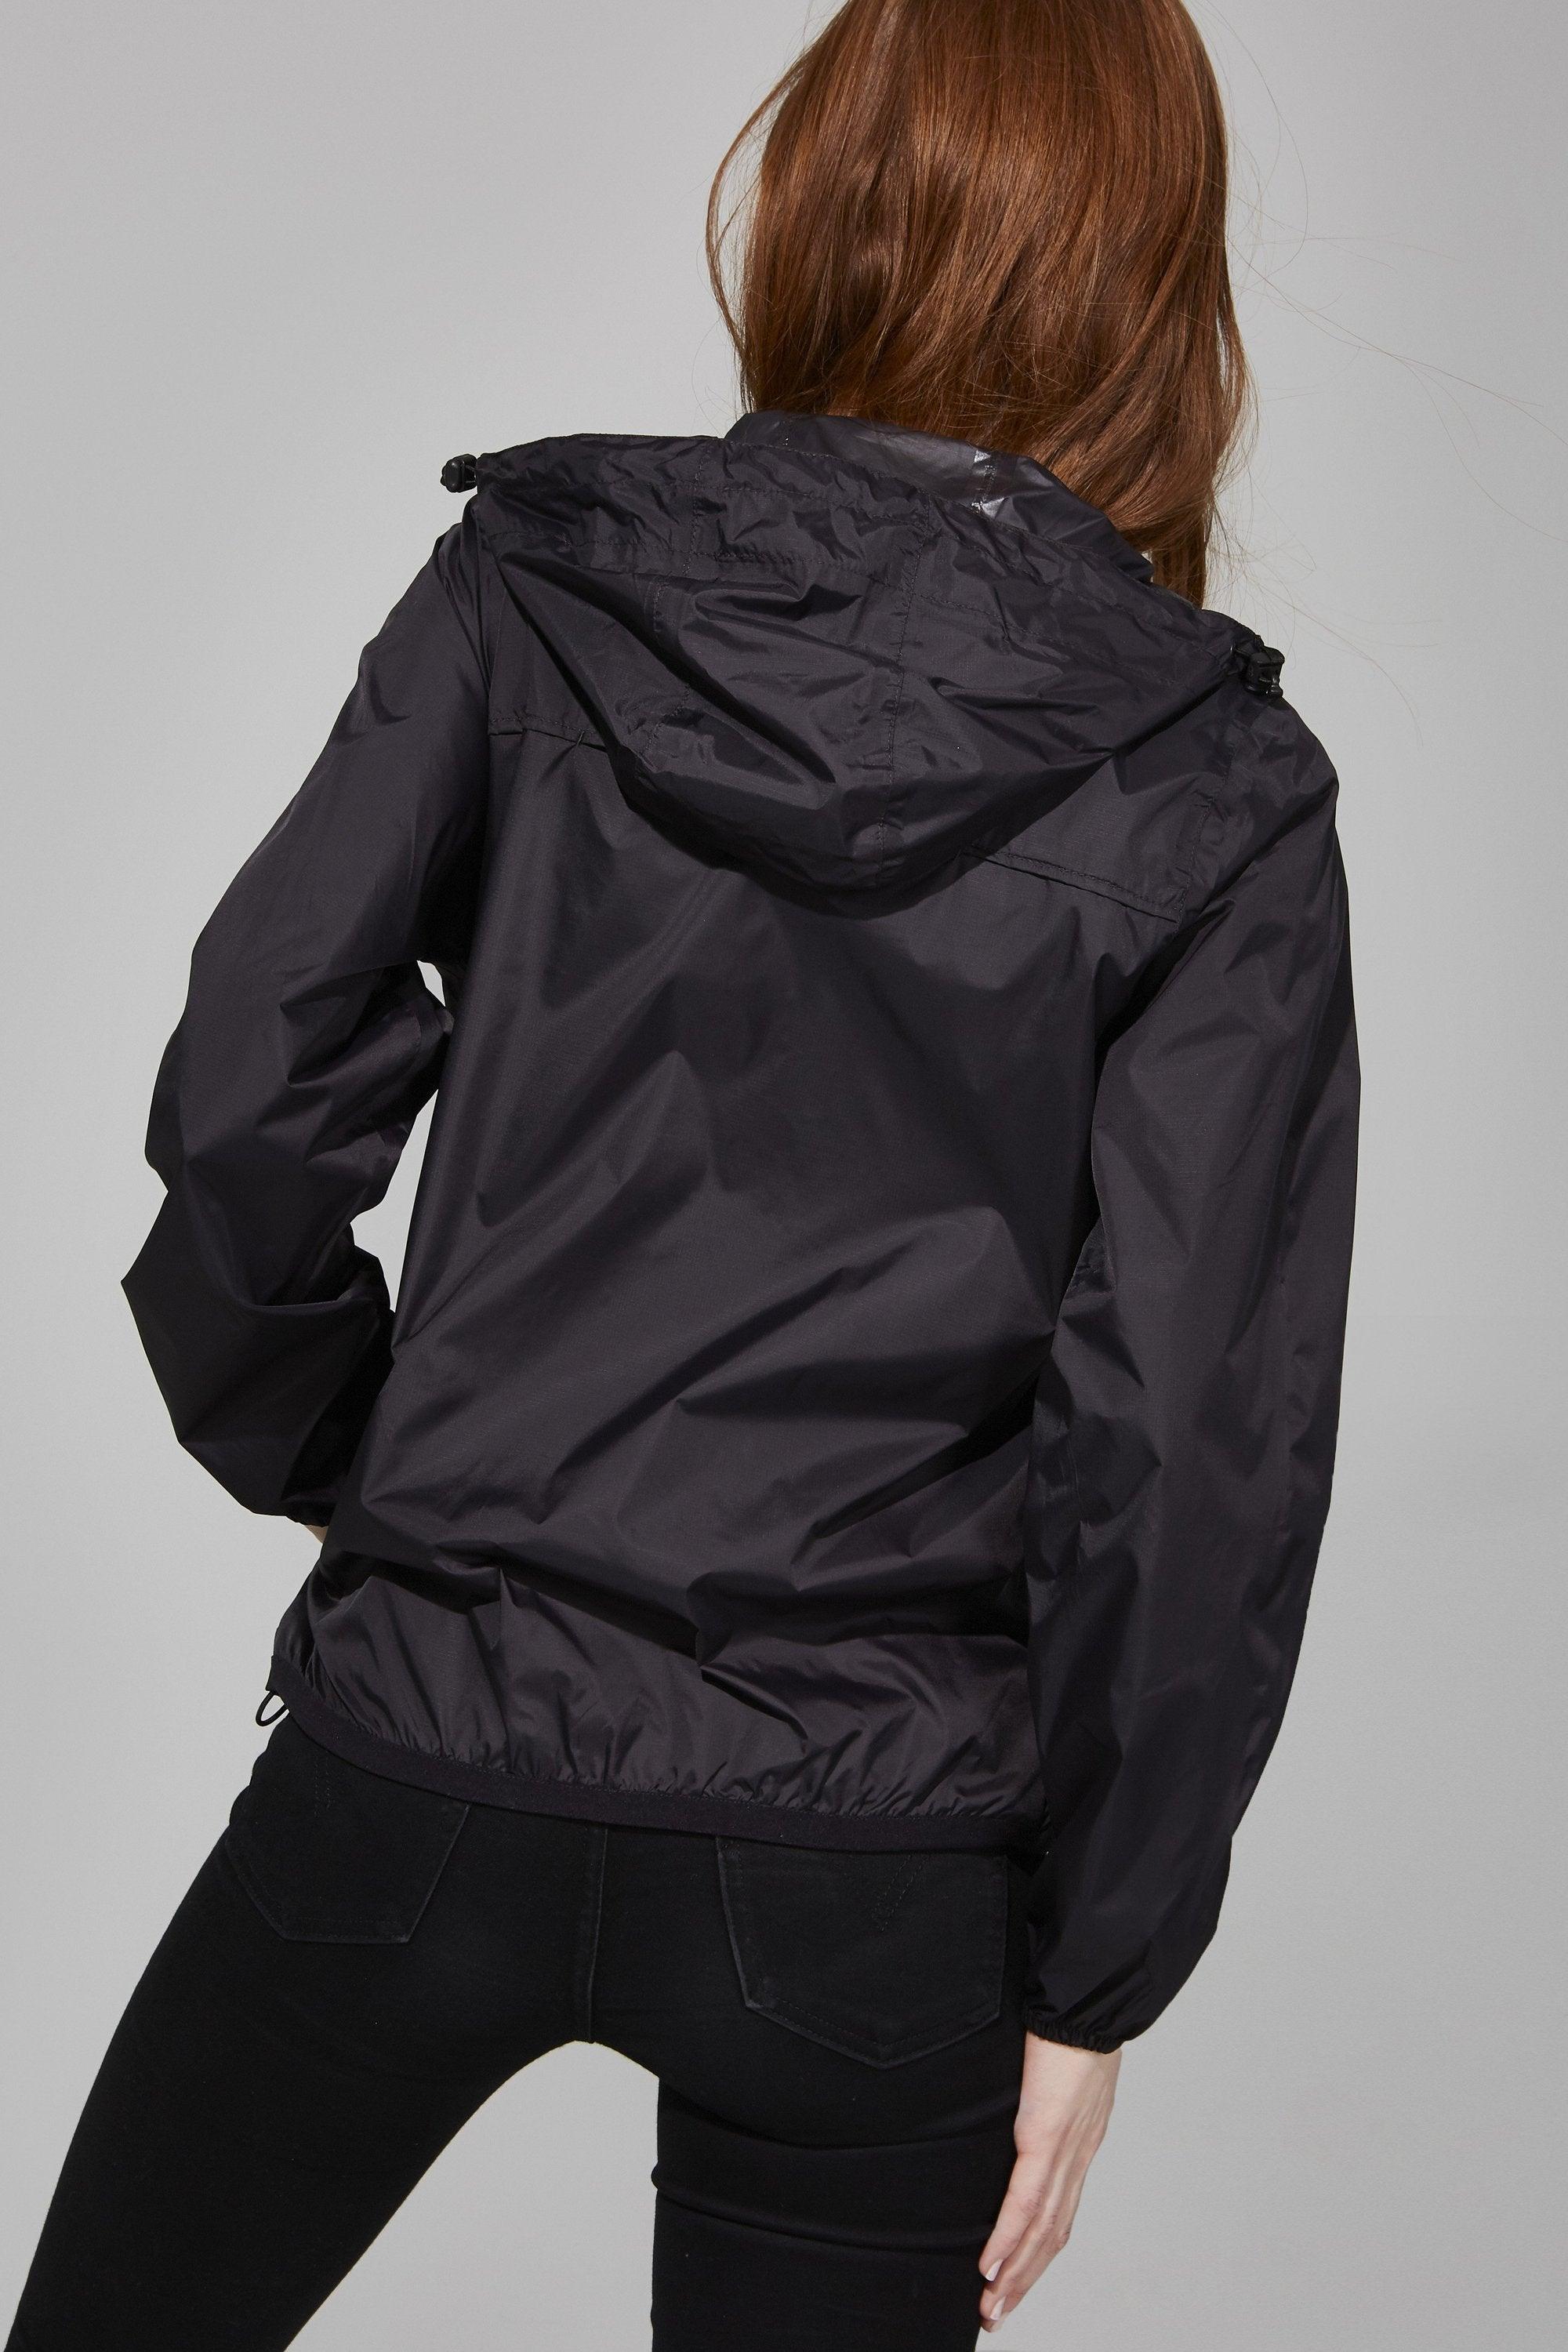 Full Zip Packable Rain Jacket and Windbreaker in Black - VirtuousWares:Global